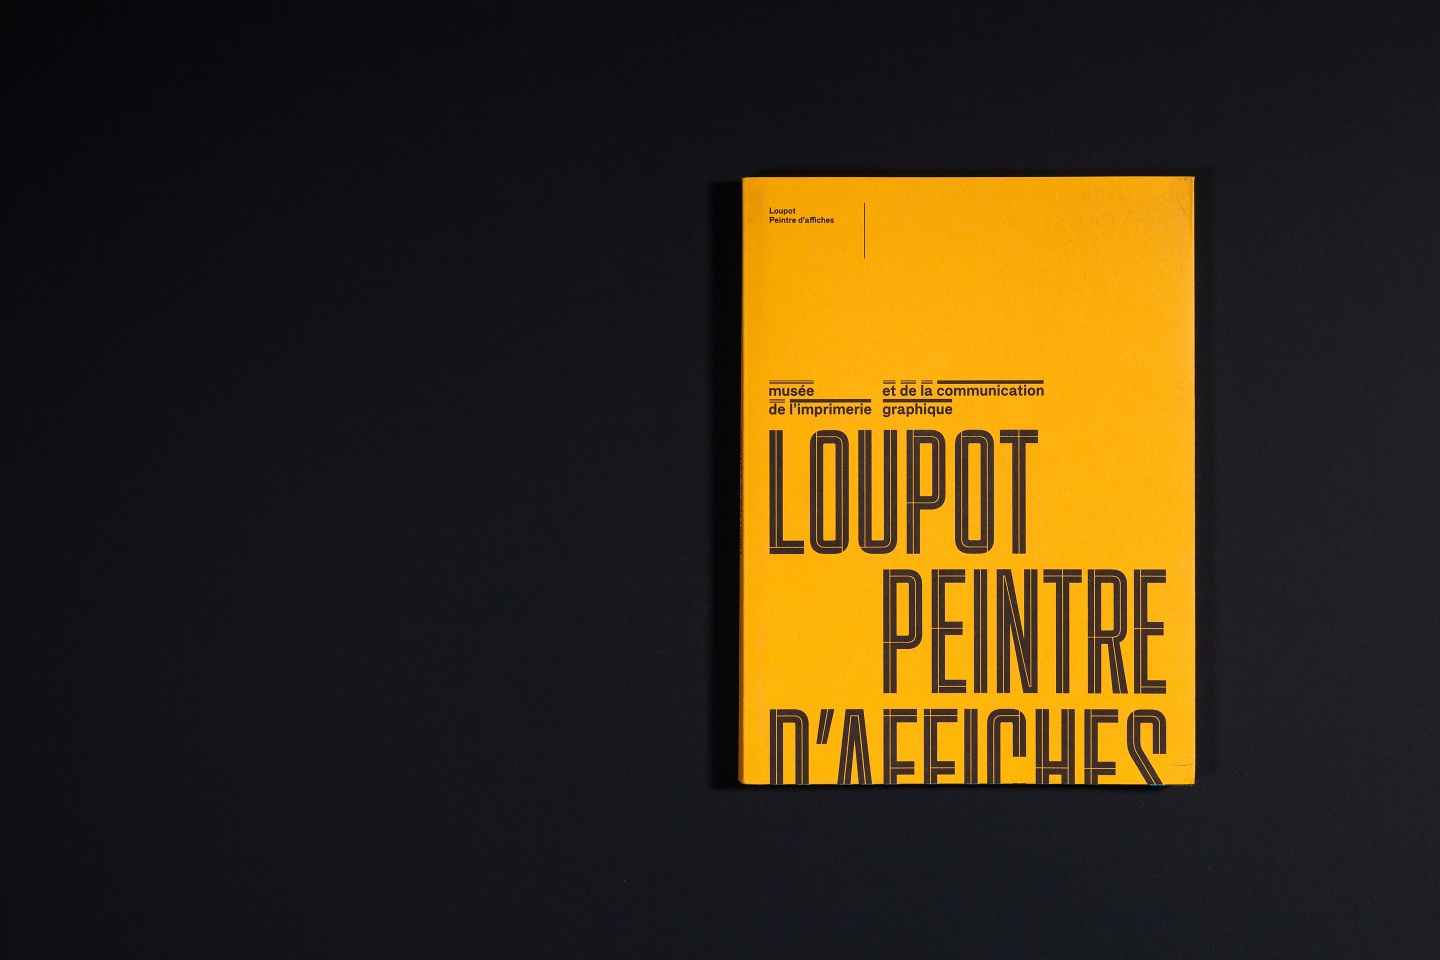 La composition de la couverture joue du format du catalogue en rapport avec celui du format des affiches dessinées par Loupot.